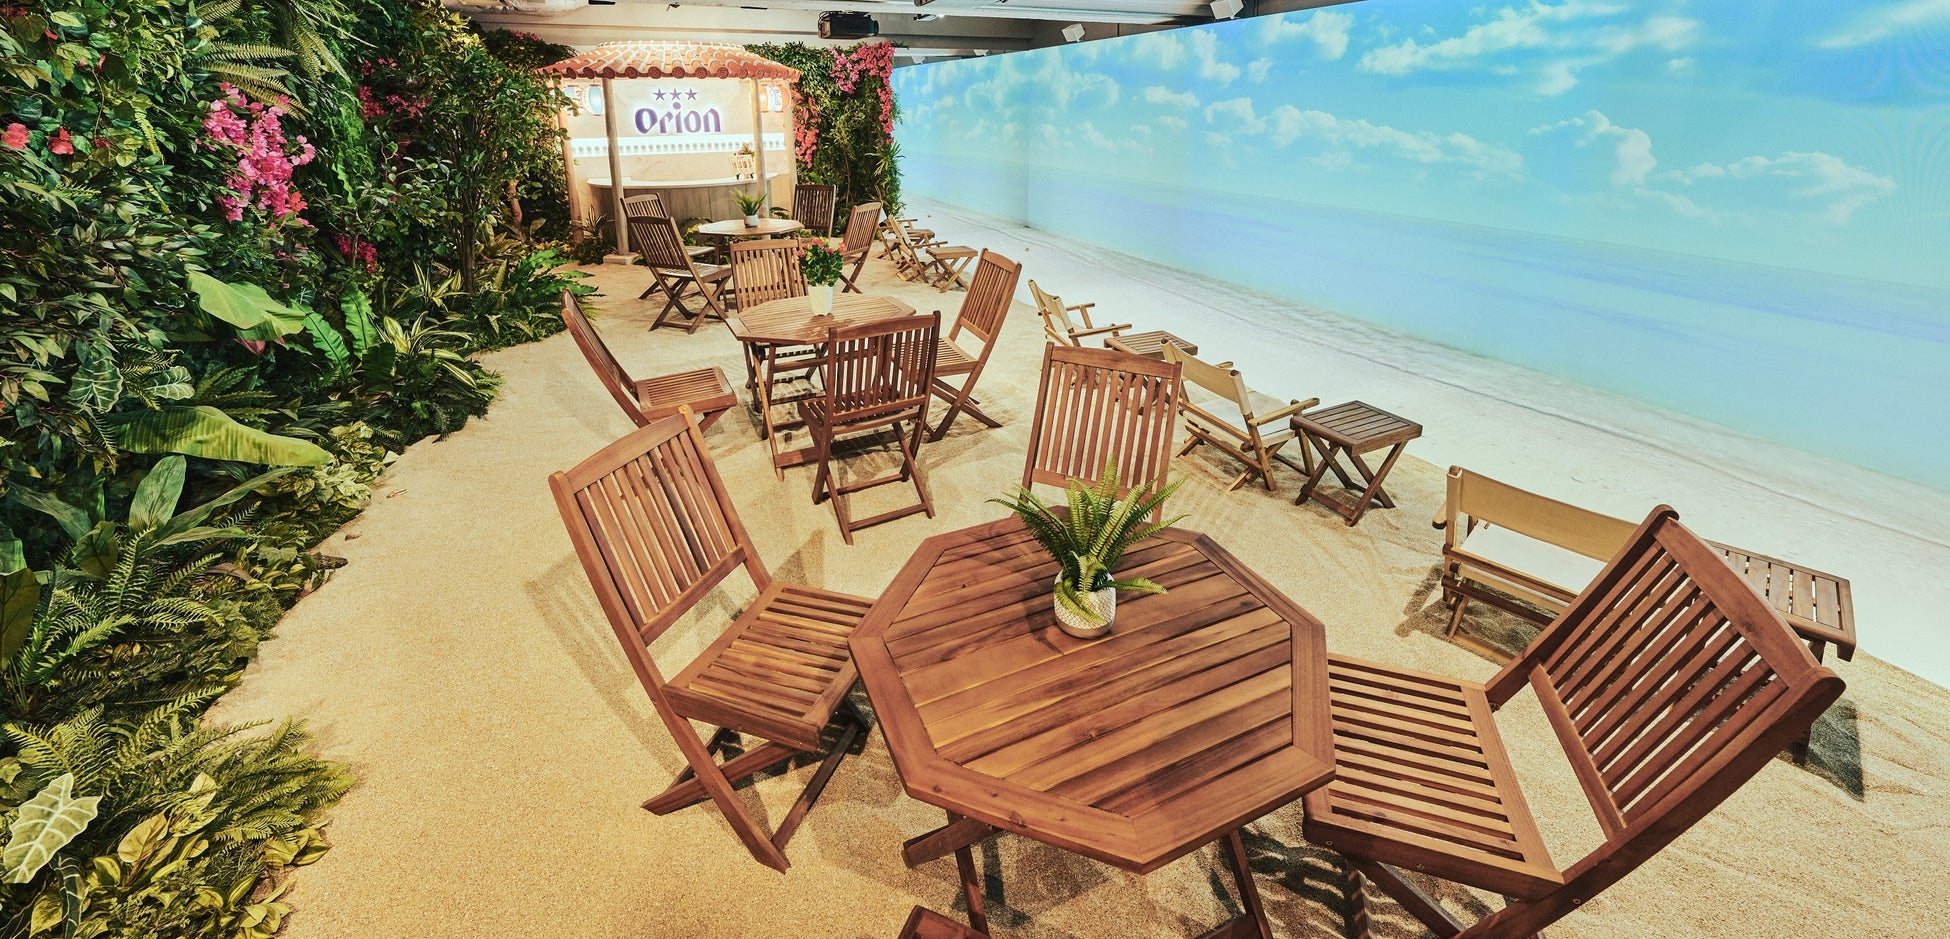 渋谷の地下空間に、東洋一美しいと称される宮古島のビーチが出現！「秒で沖縄に行けるバー by Orion」4月27日から～5月6日までGW期間中に開催！